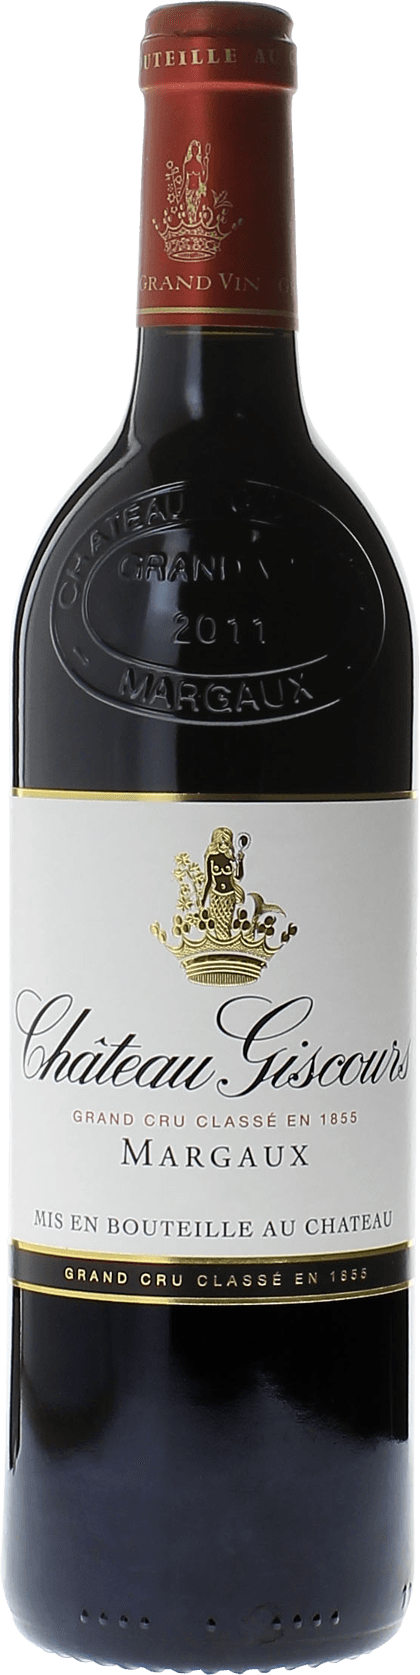 Giscours 1986 3me Grand cru class Margaux, Bordeaux rouge